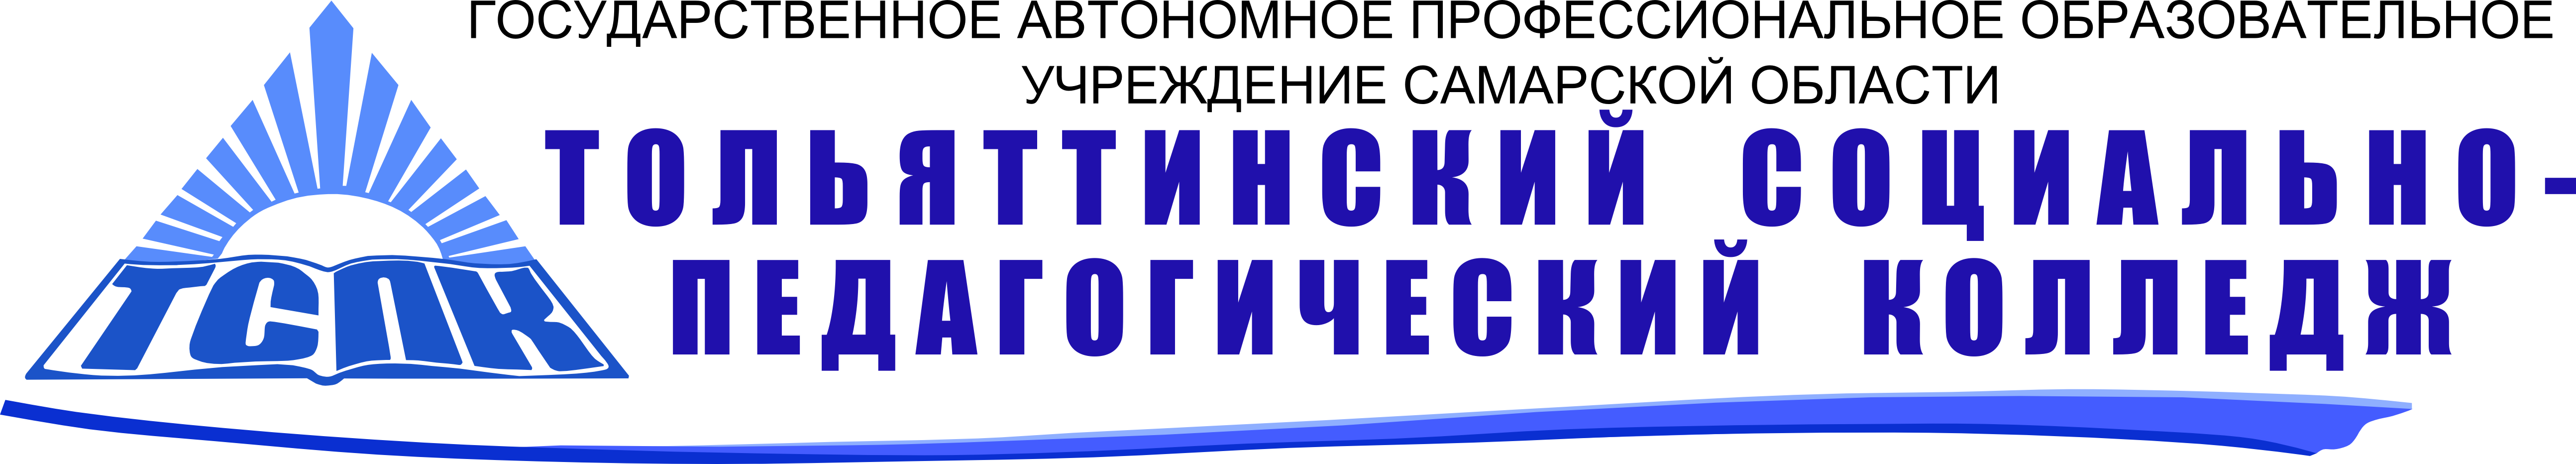 Сайт социально педагогического колледжа тольятти. Социально-педагогический колледж Тольятти. Колледж ТСПК Тольятти. Эмблема ТСПК Тольятти. ТСПК логотип колледж.